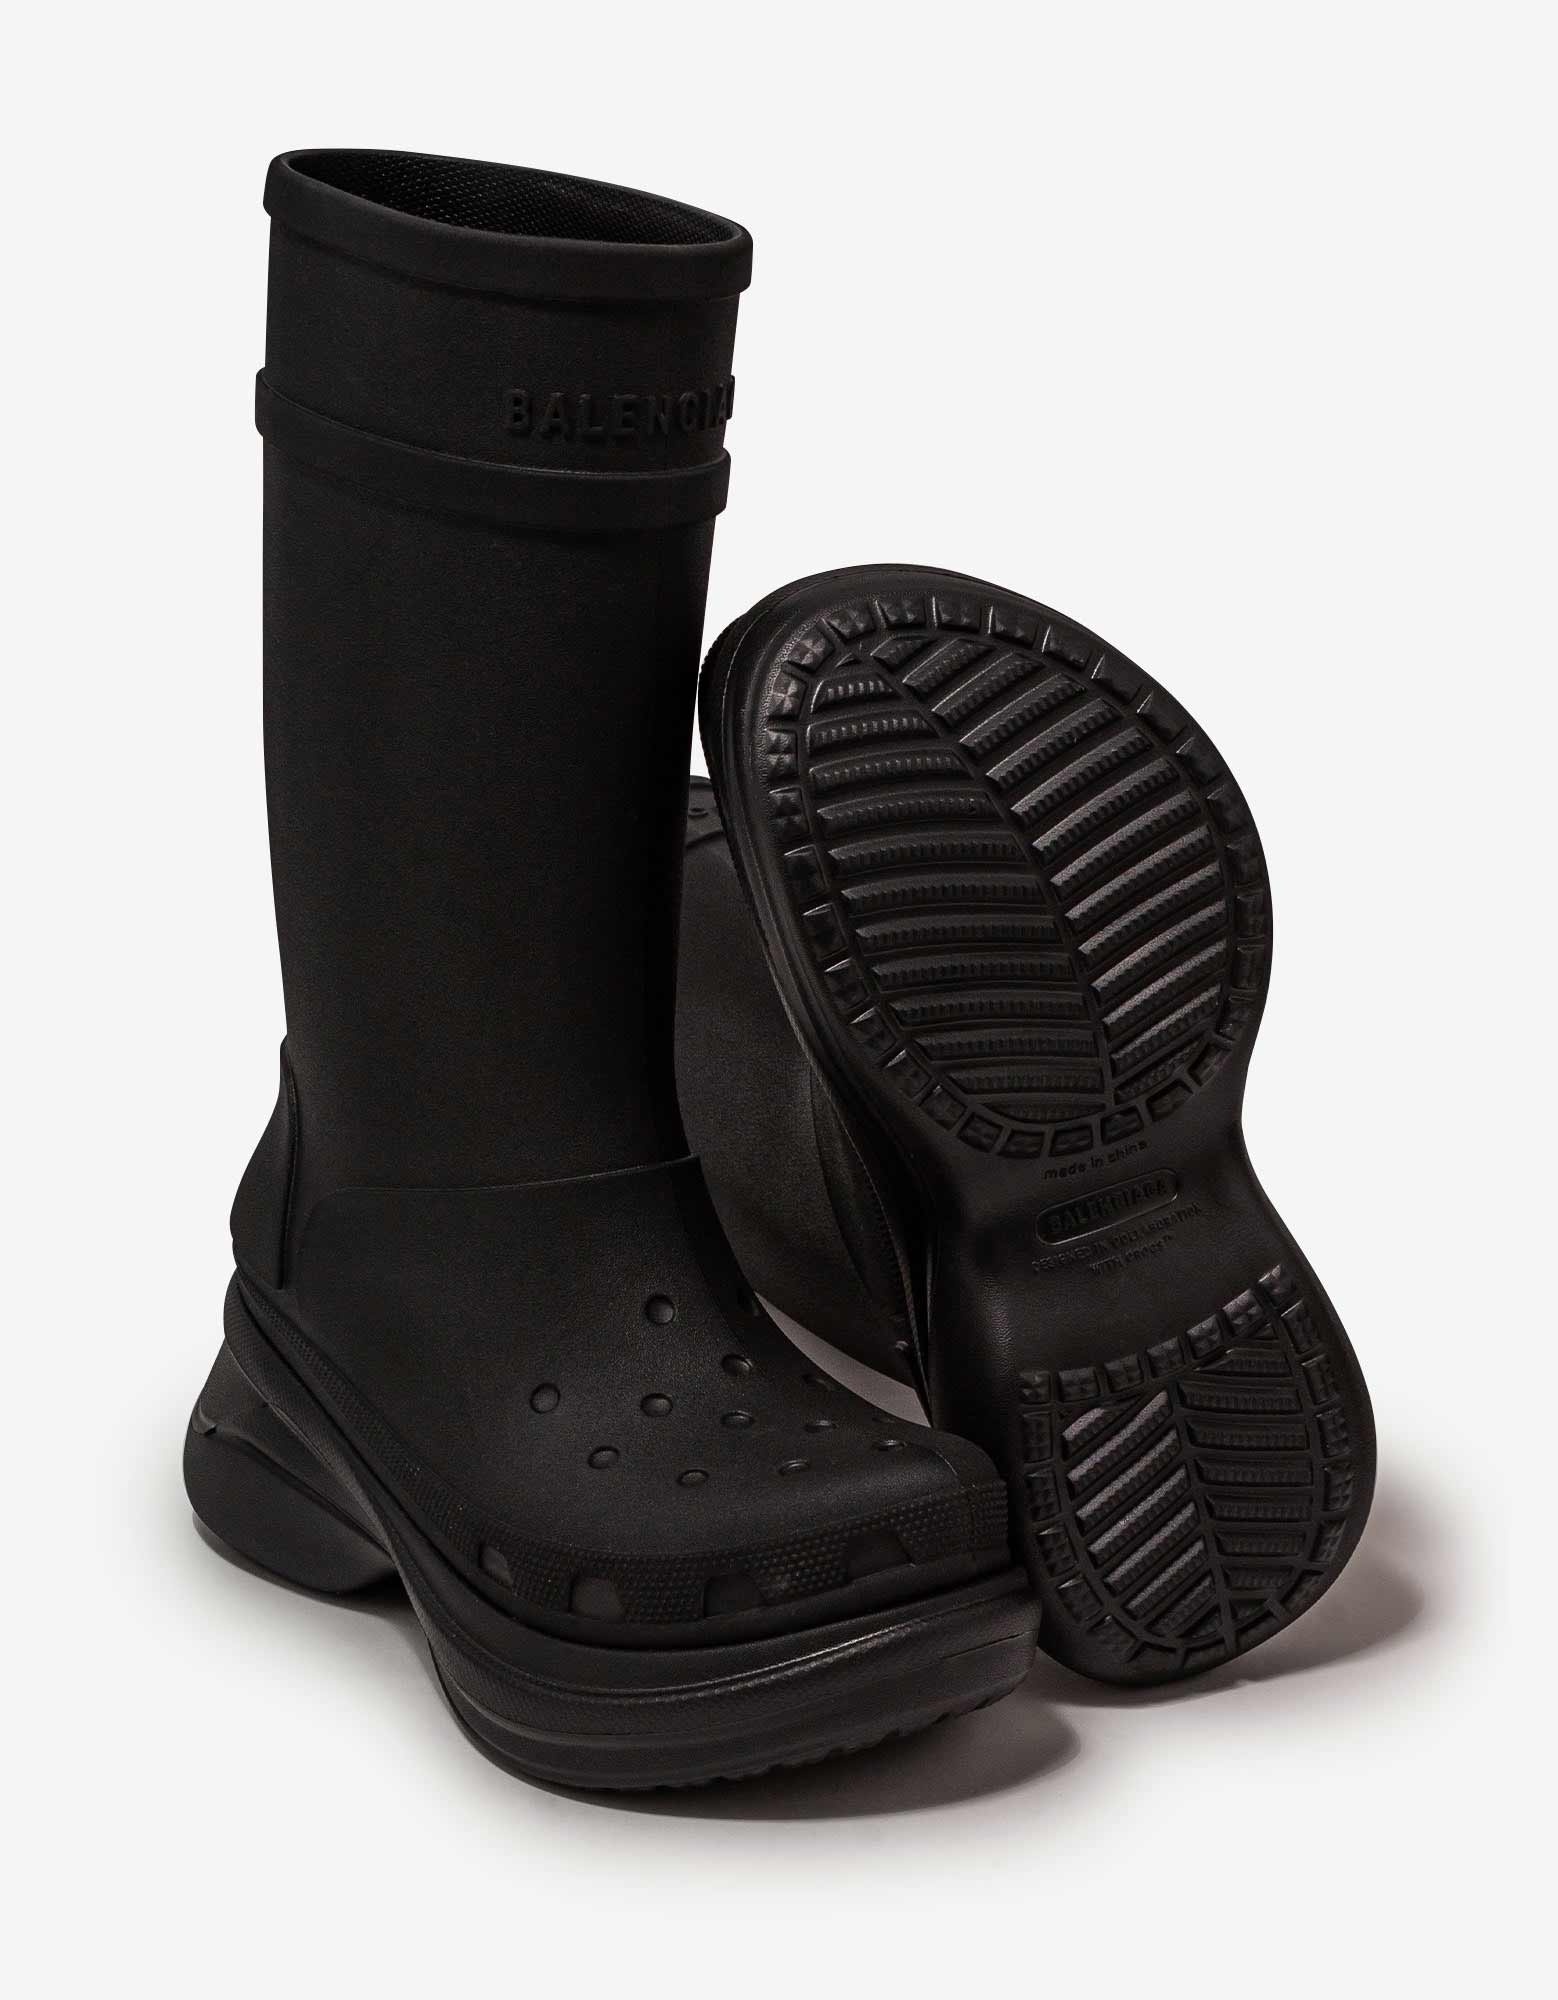 Black Crocs Boots - 7